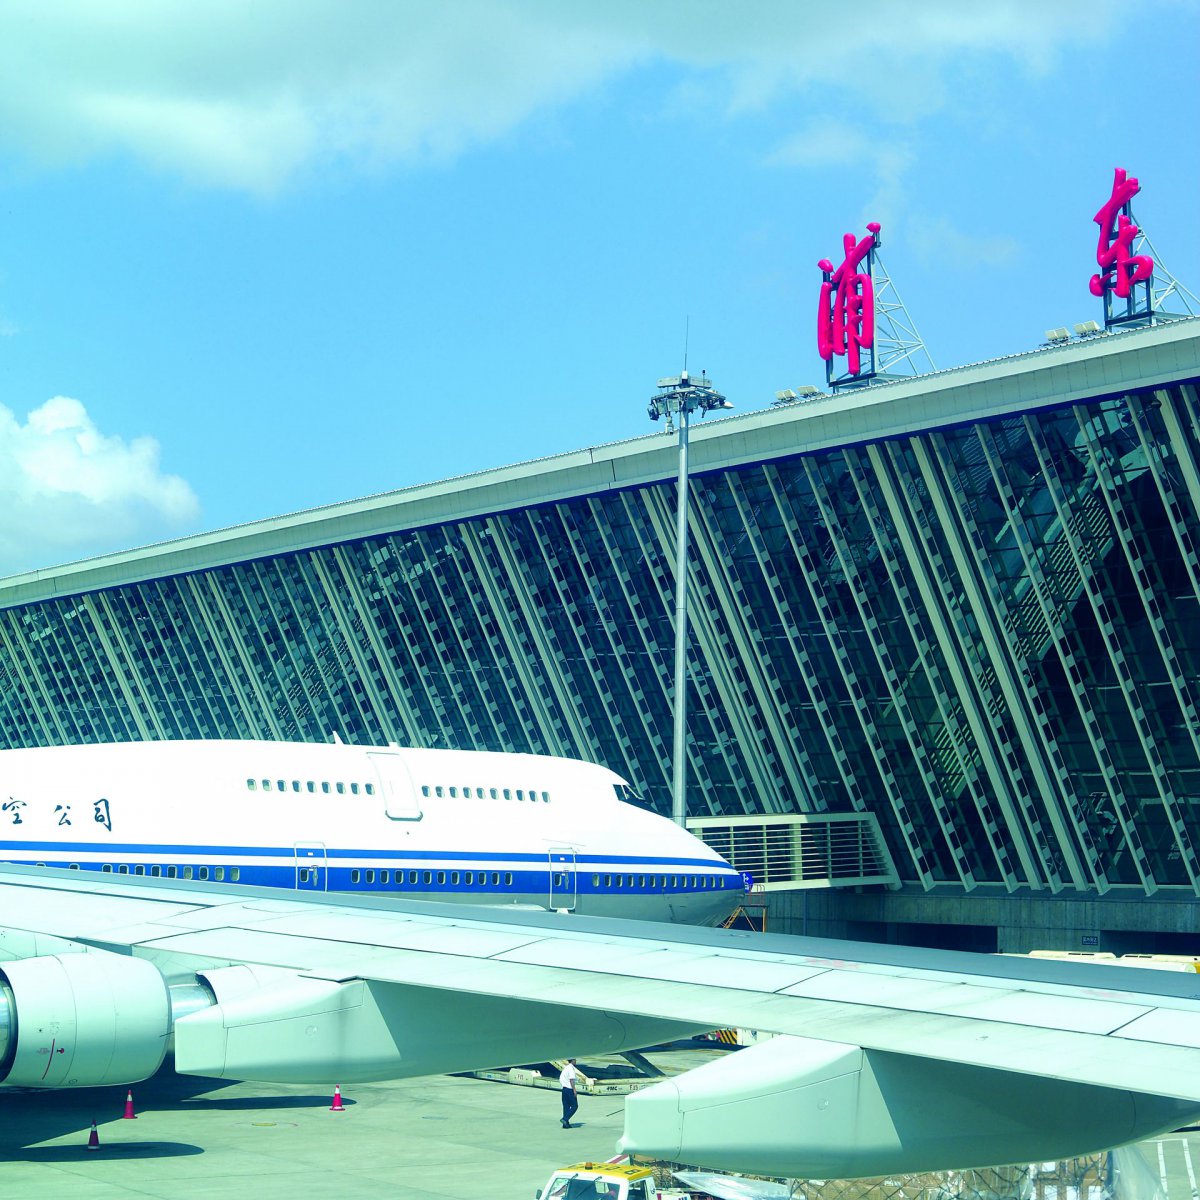 上海浦东国际机场PPT图片